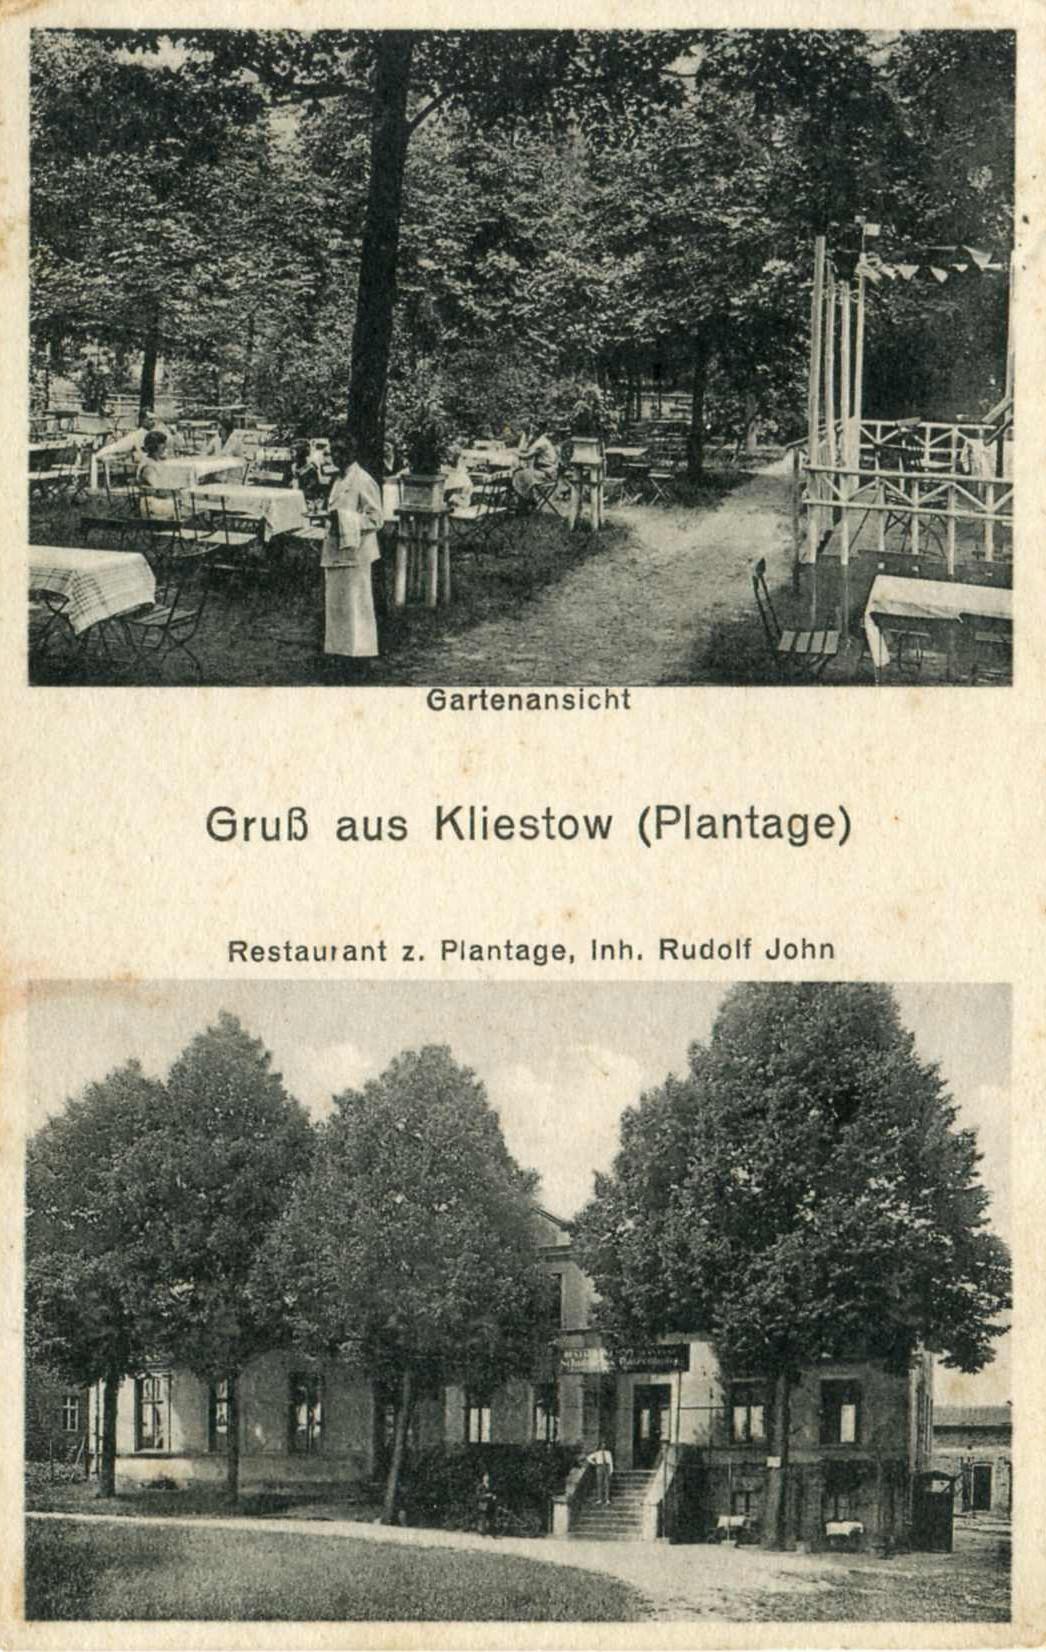 Gasthaus Plantage in Kliestow